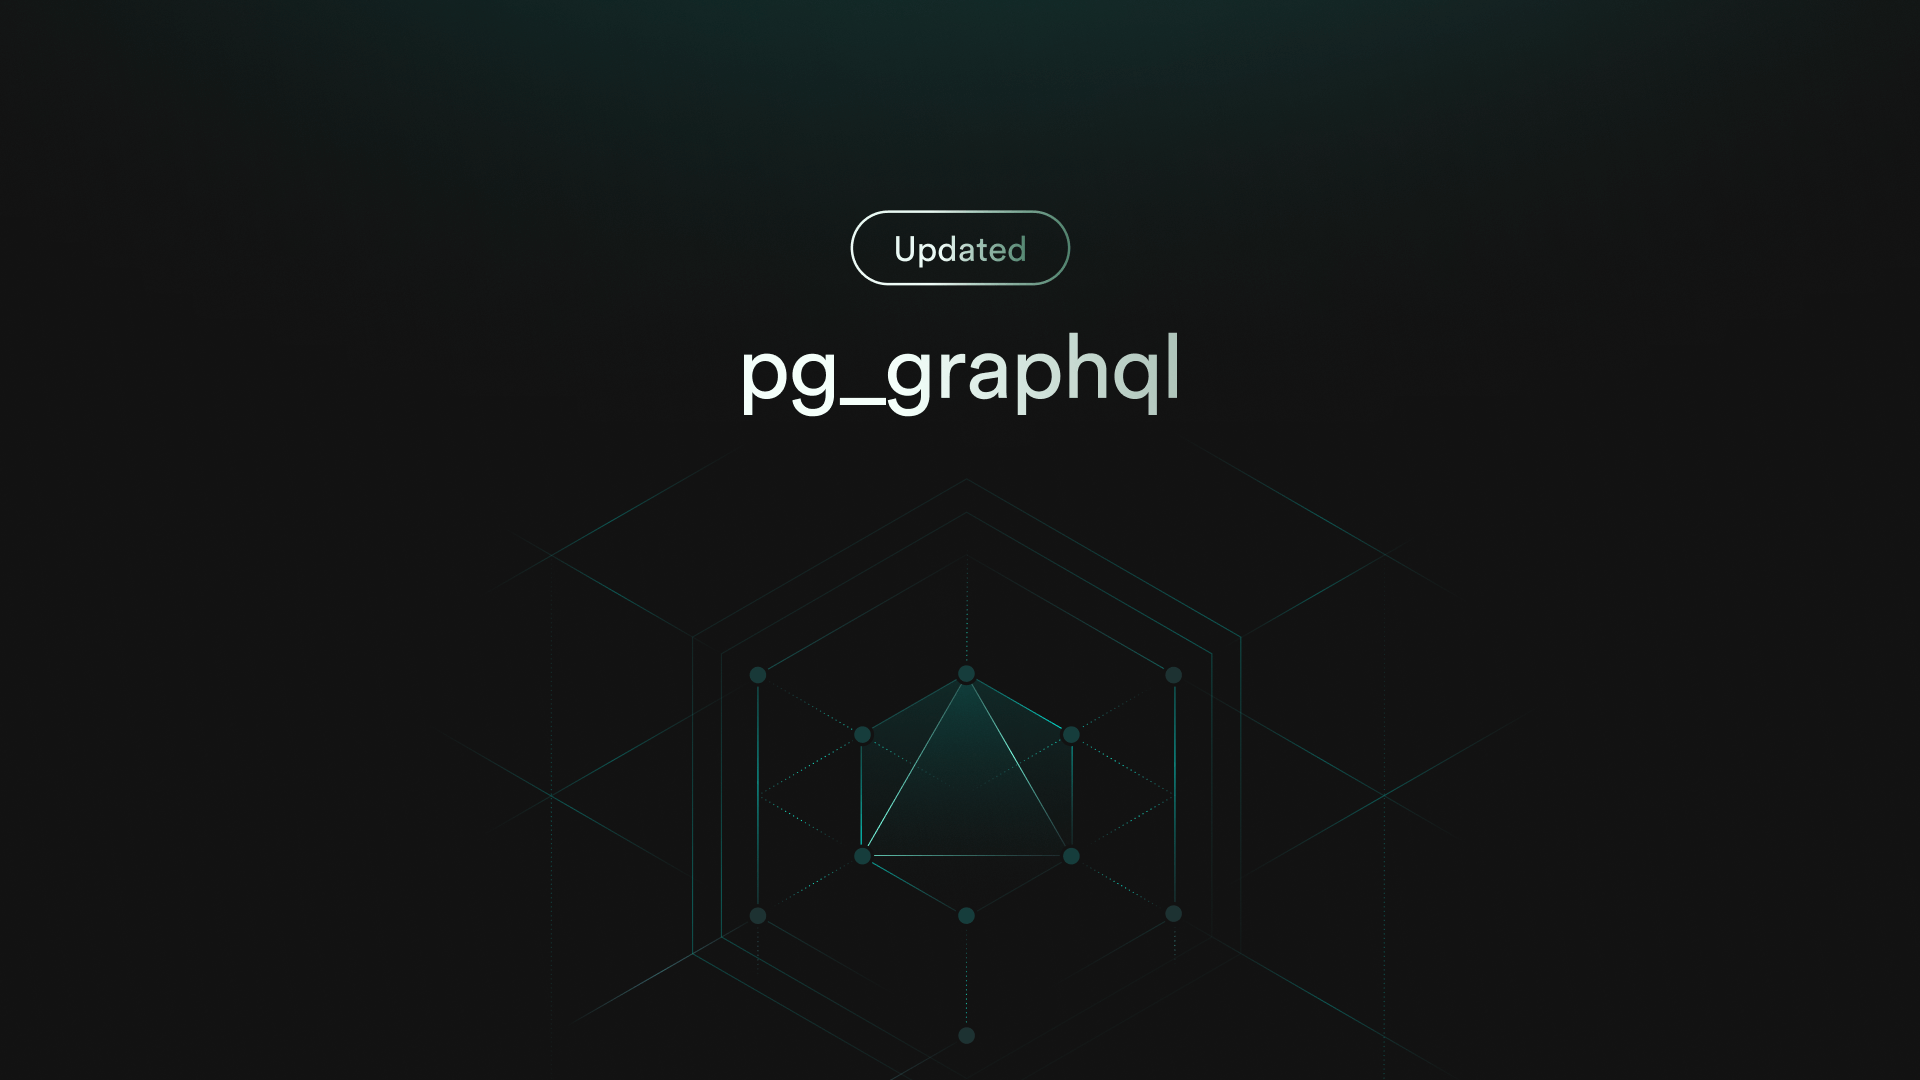 pg_graphql v1.0